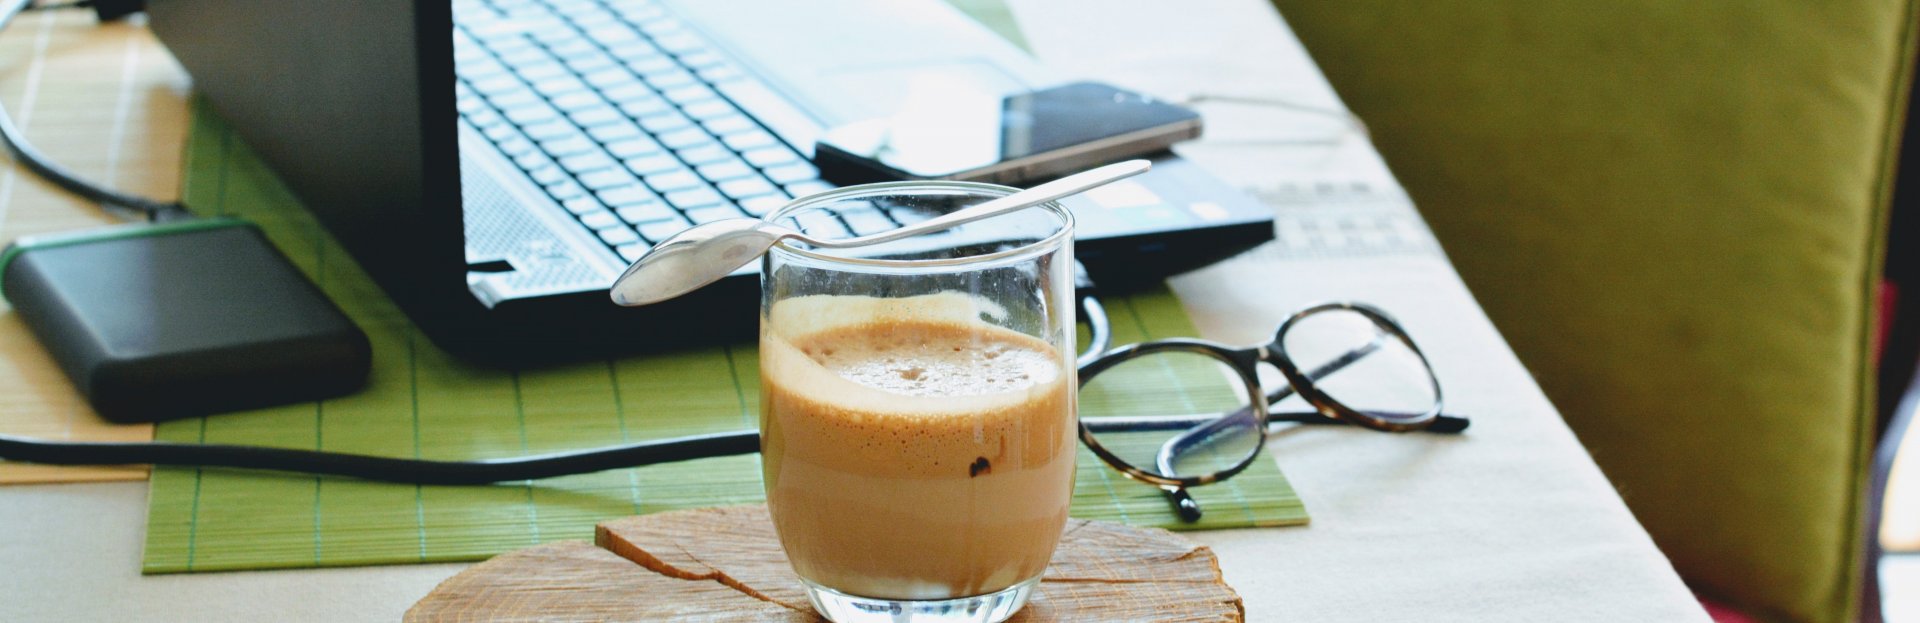 Laptop, gafas y un café sobre un escritorio